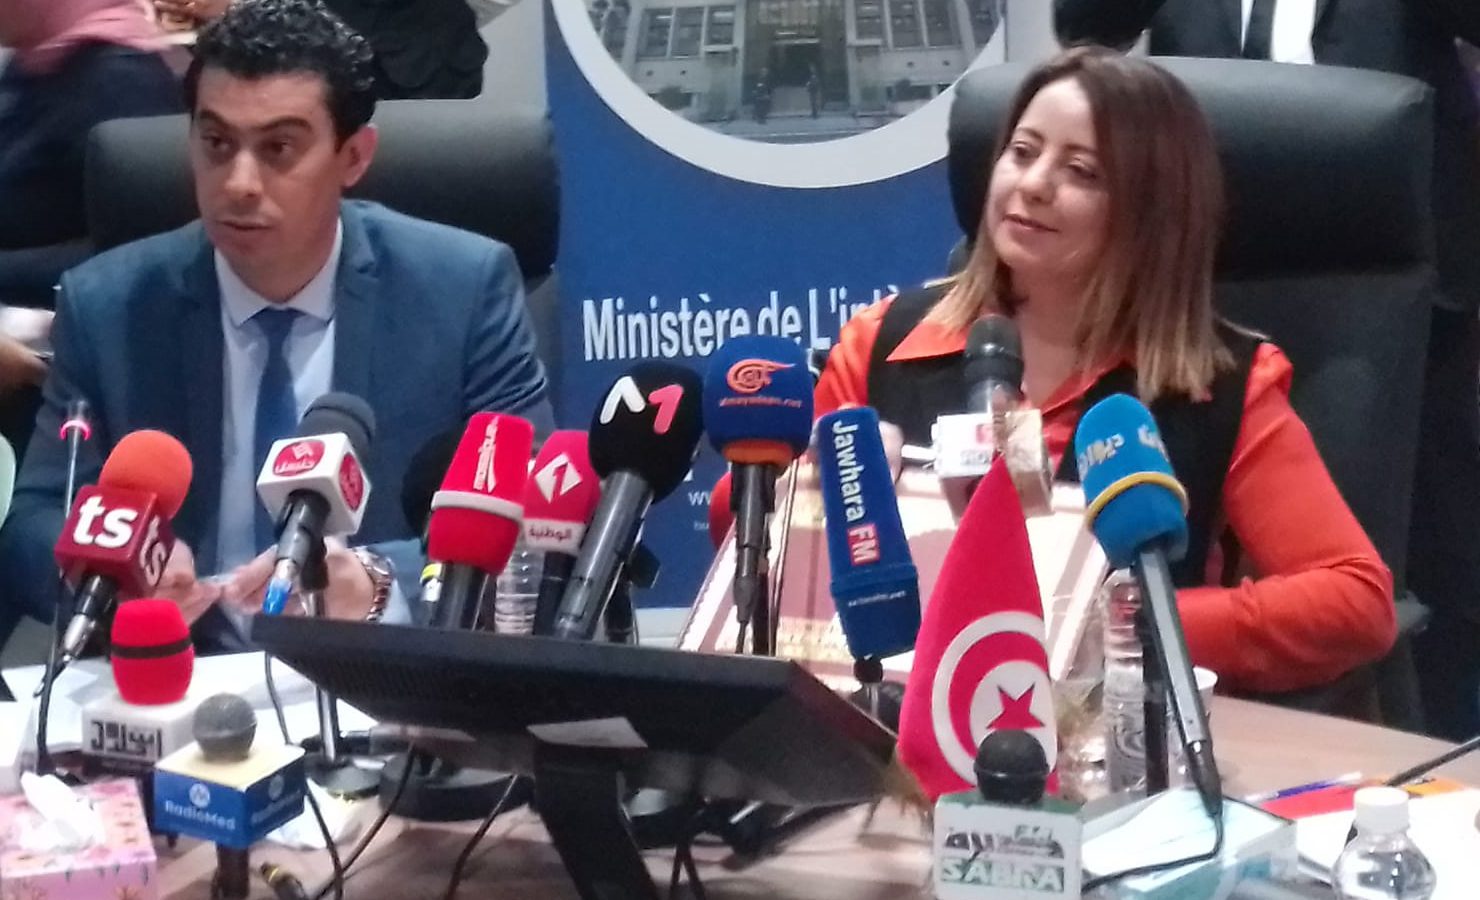 قضية جمعية “نماء تونس”/ الداخلية تكشف عن معطيات جديدة